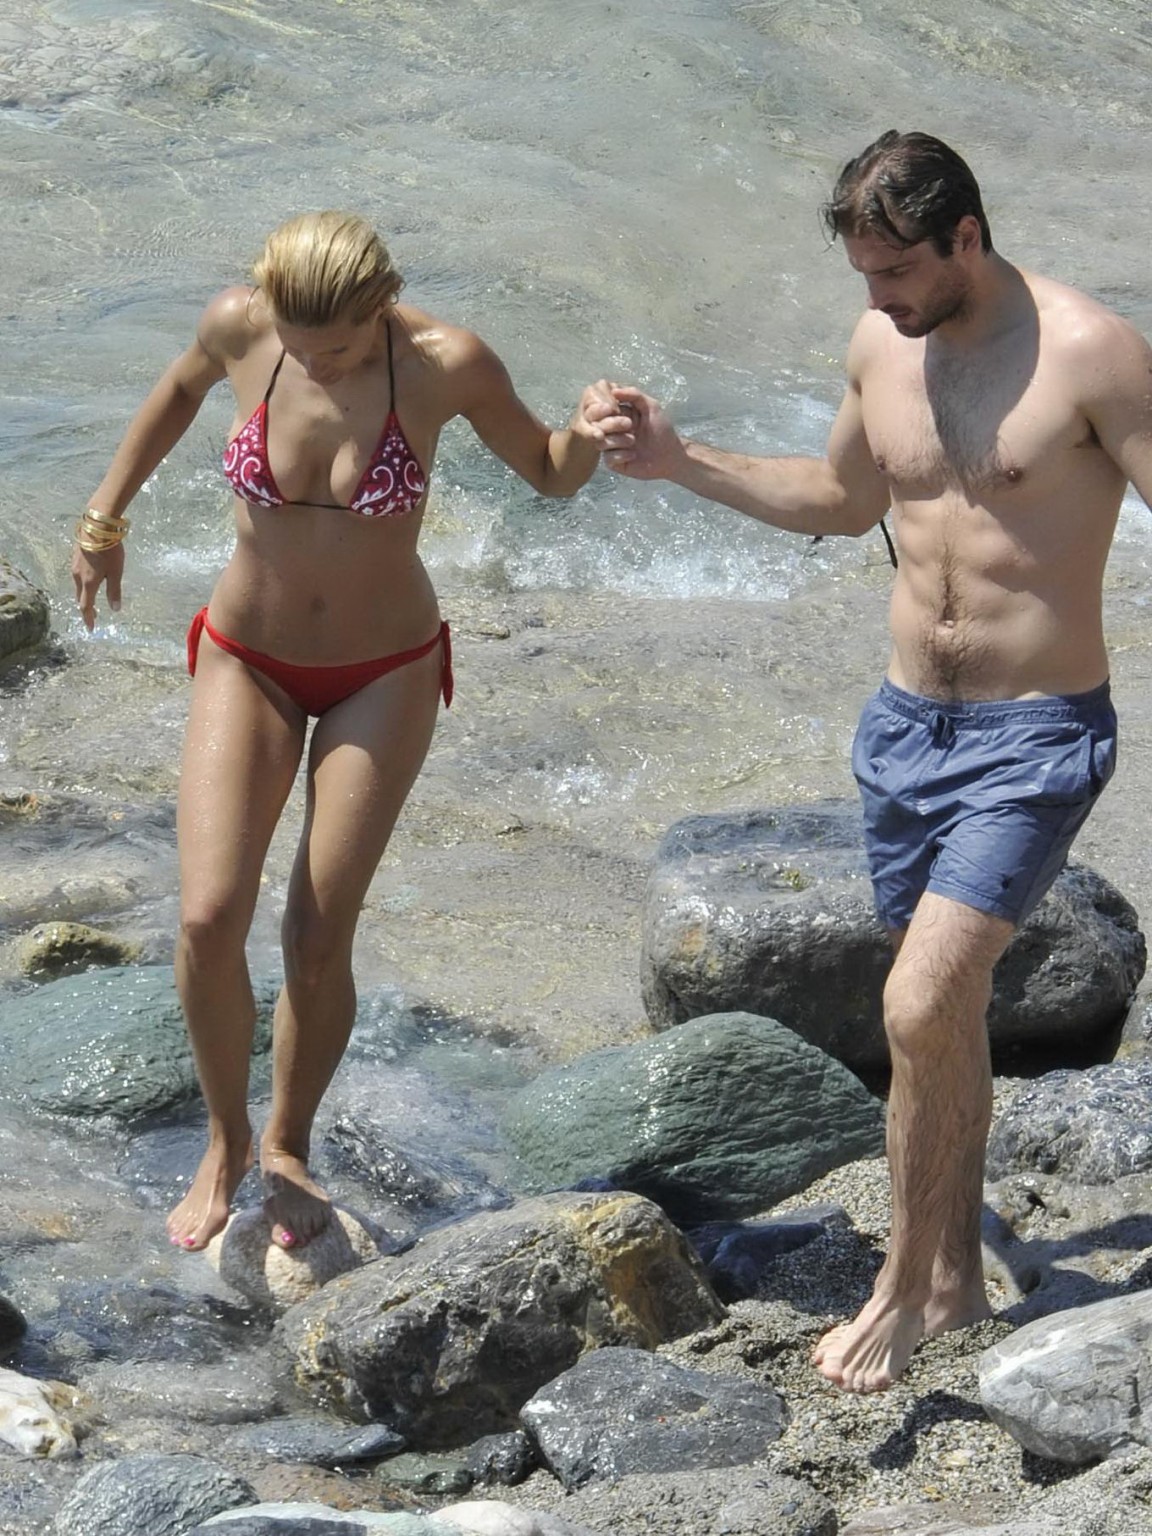 Michelle hunziker tetona con un bikini escaso en la playa de miami
 #75259570